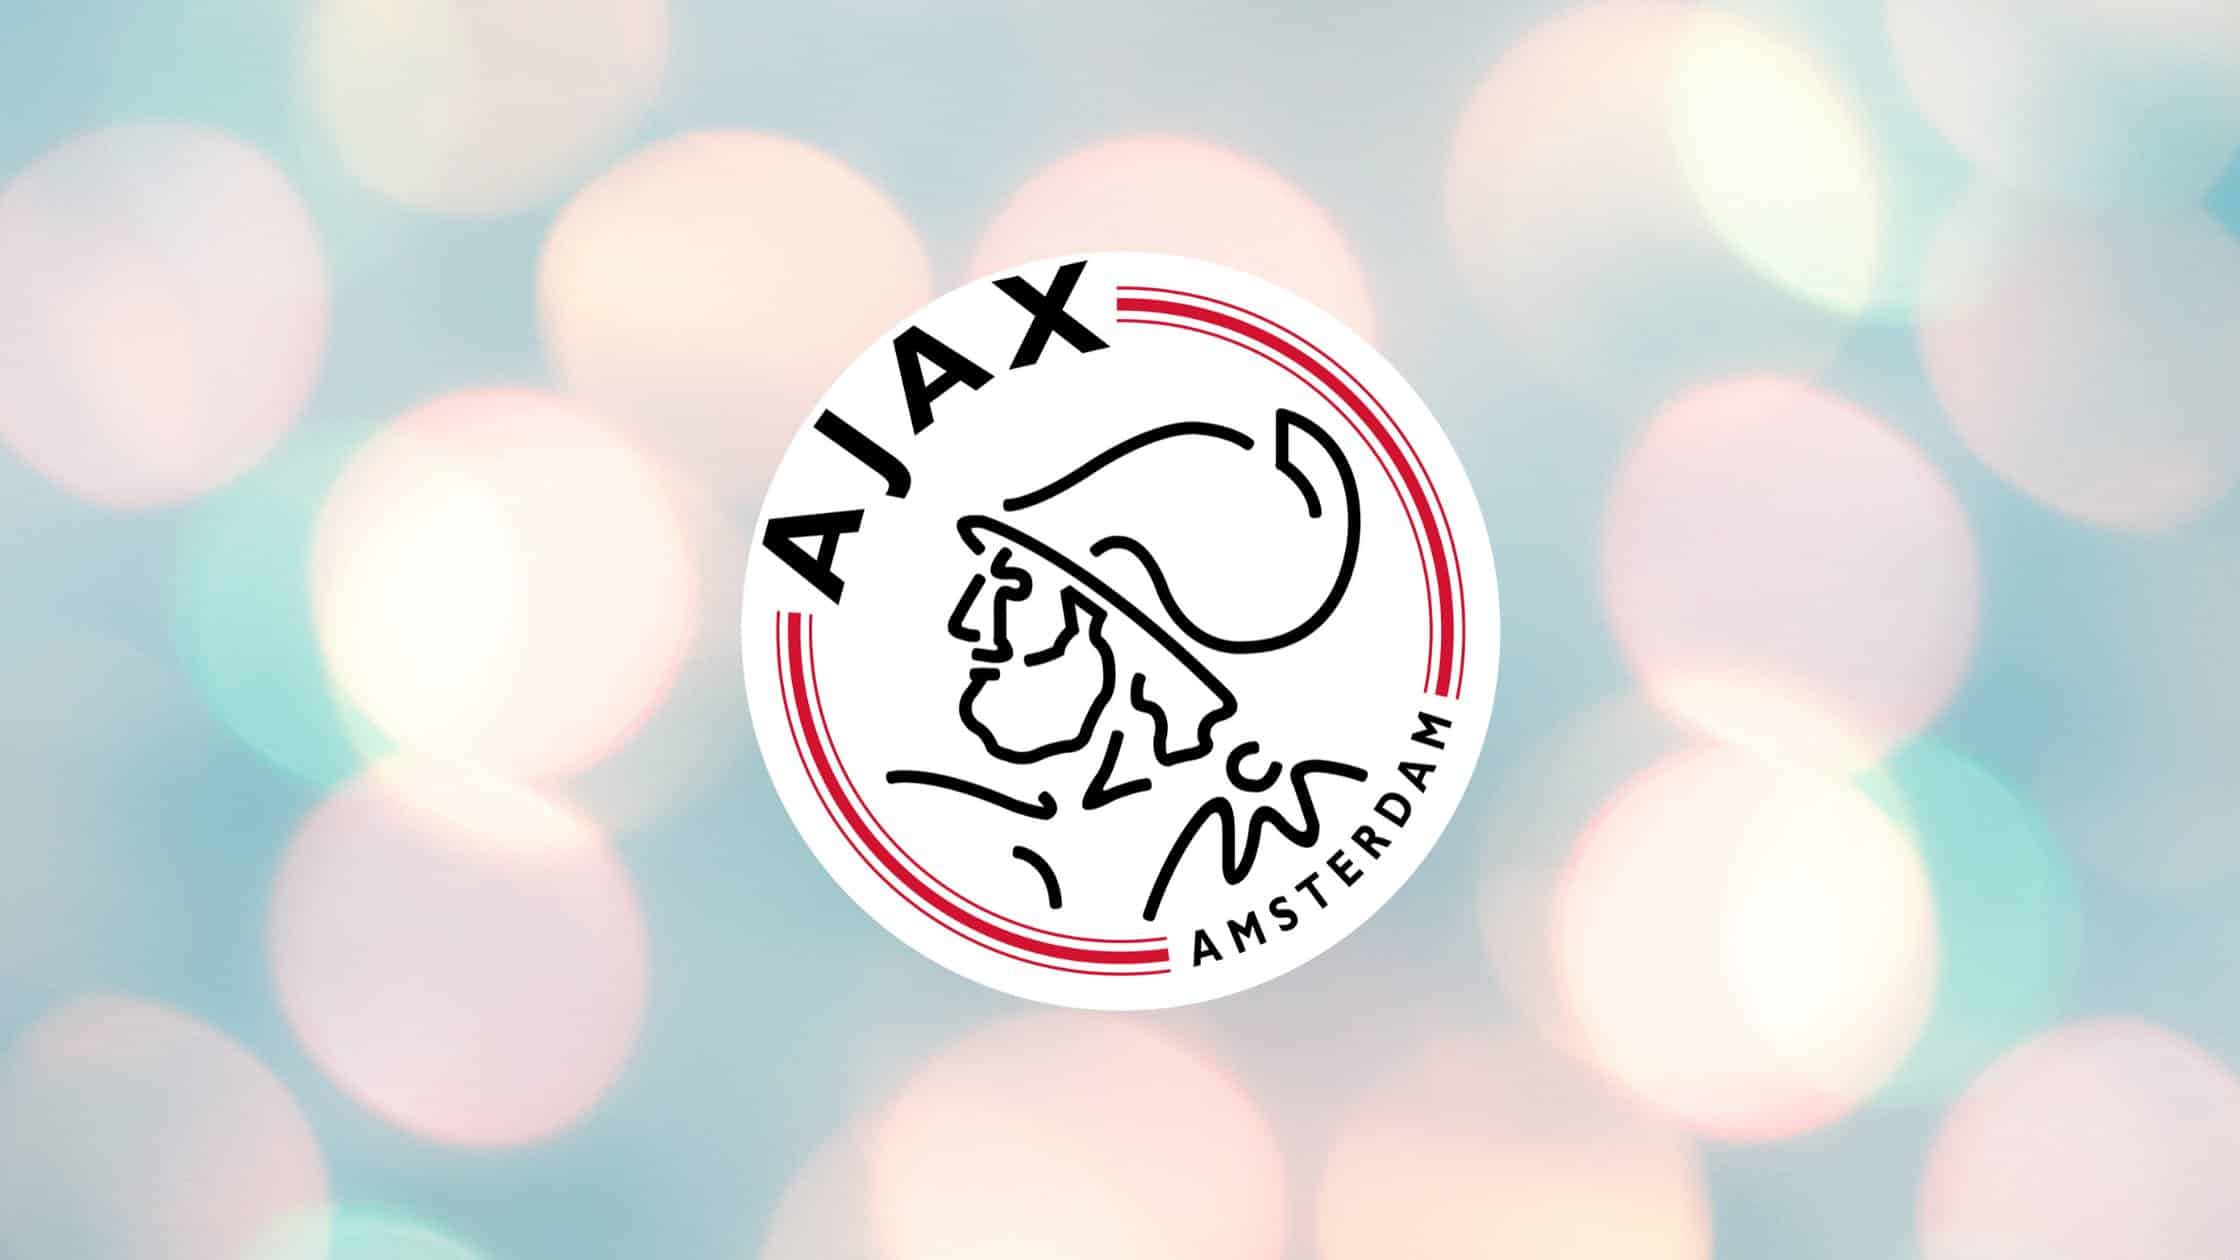 Ajax Amsterdam ist ein Dauergast in der Champions League.